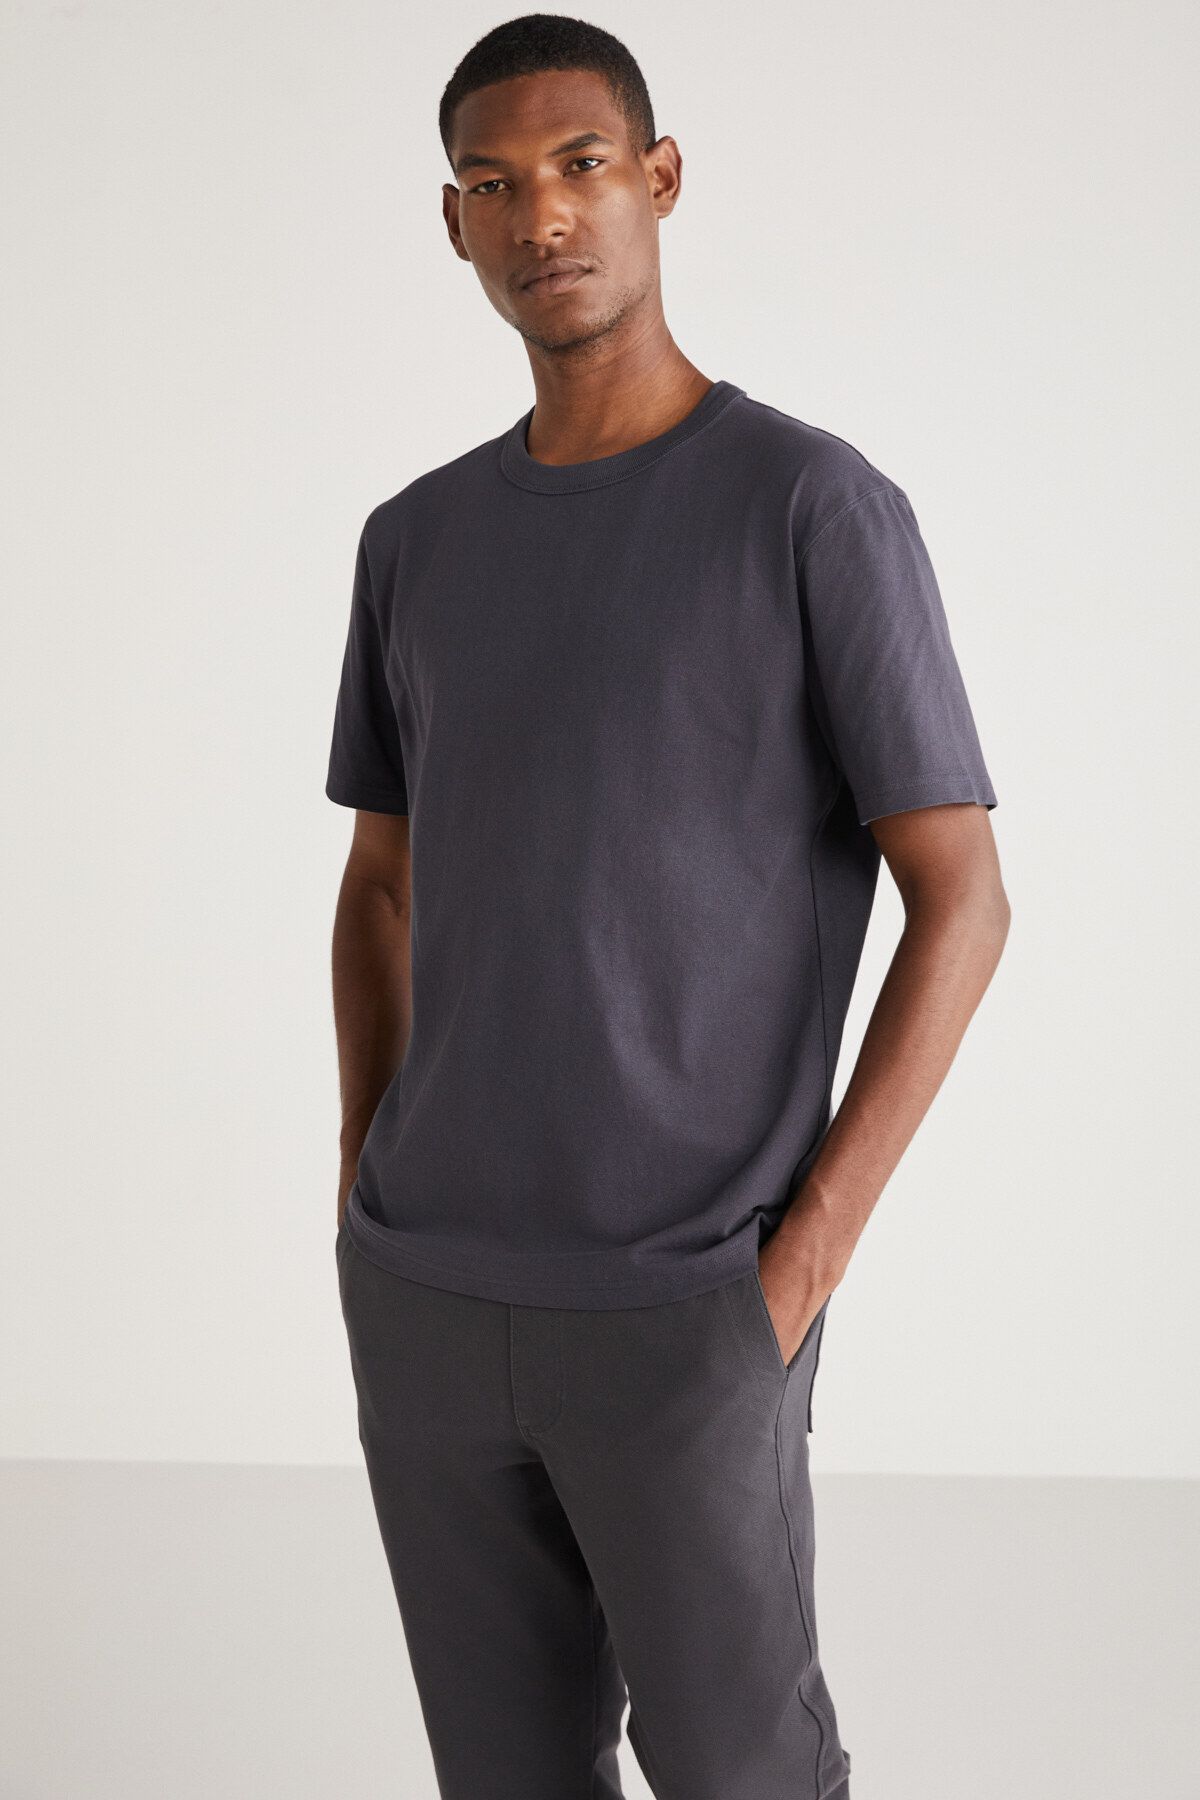 Louis Vuitton %100 Orjinal Erkek Sırt Çantası - Erkek Giyim